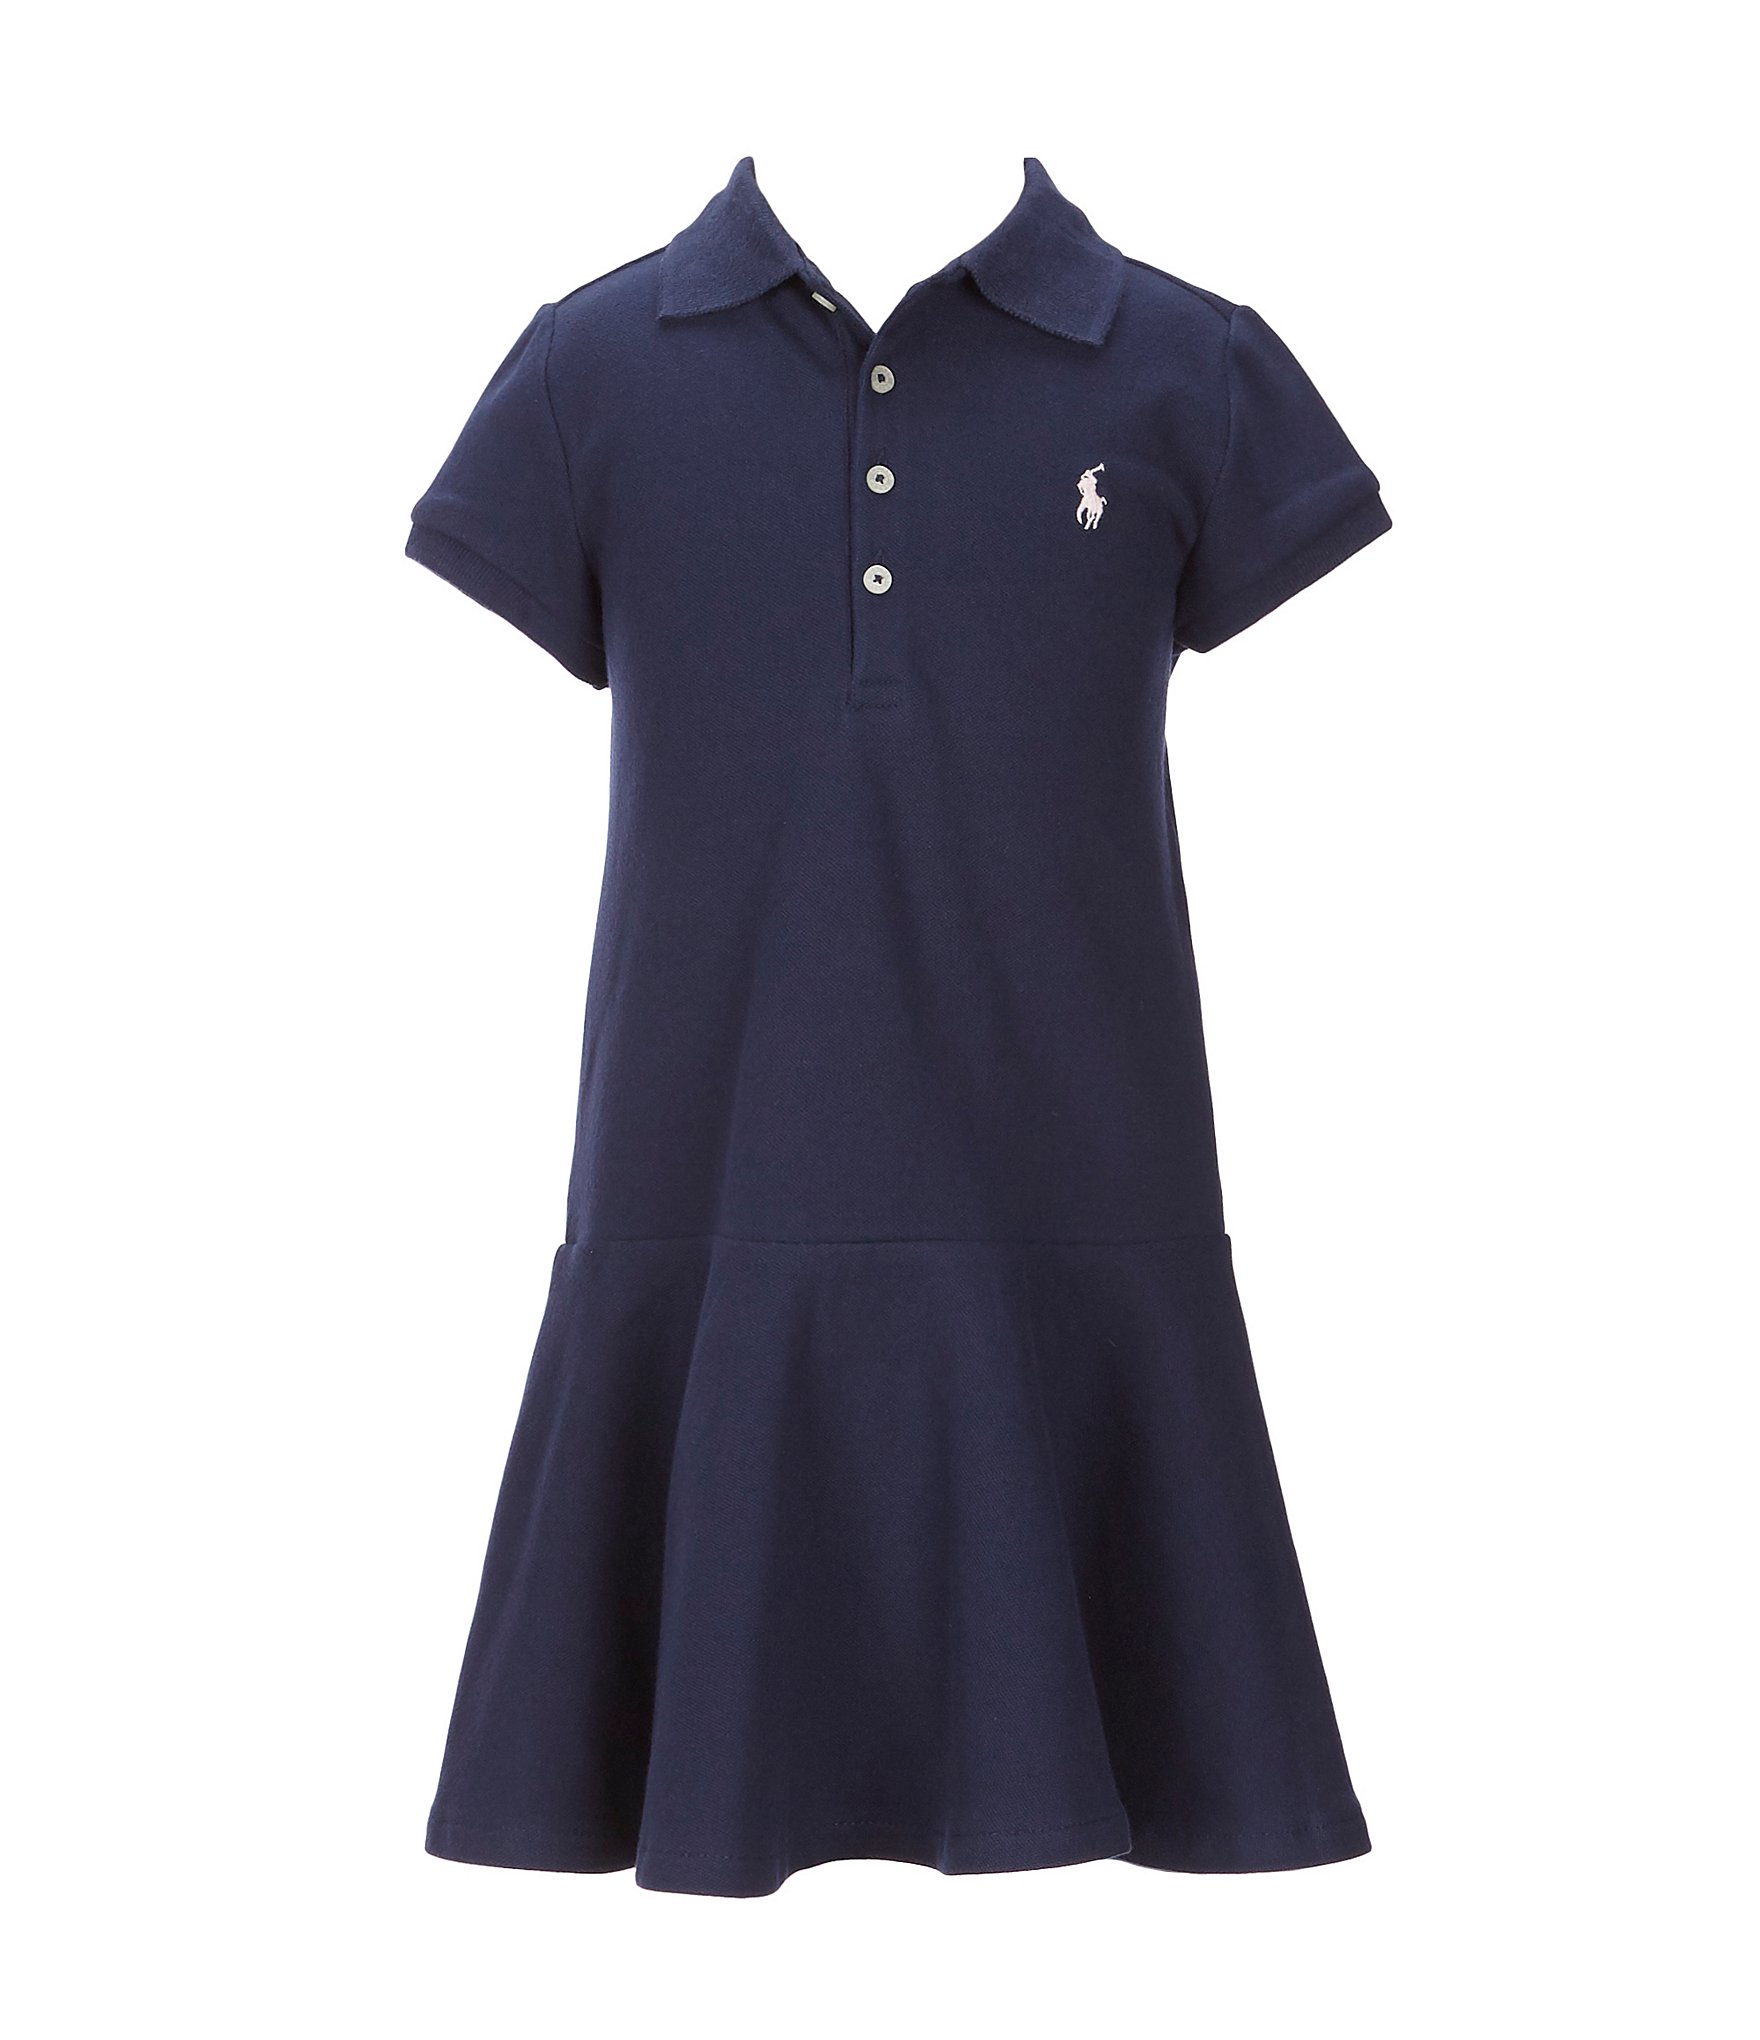 Polo Ralph Lauren Little Girls 2T-6X Short-Sleeve Mesh Dropwaist Polo ...